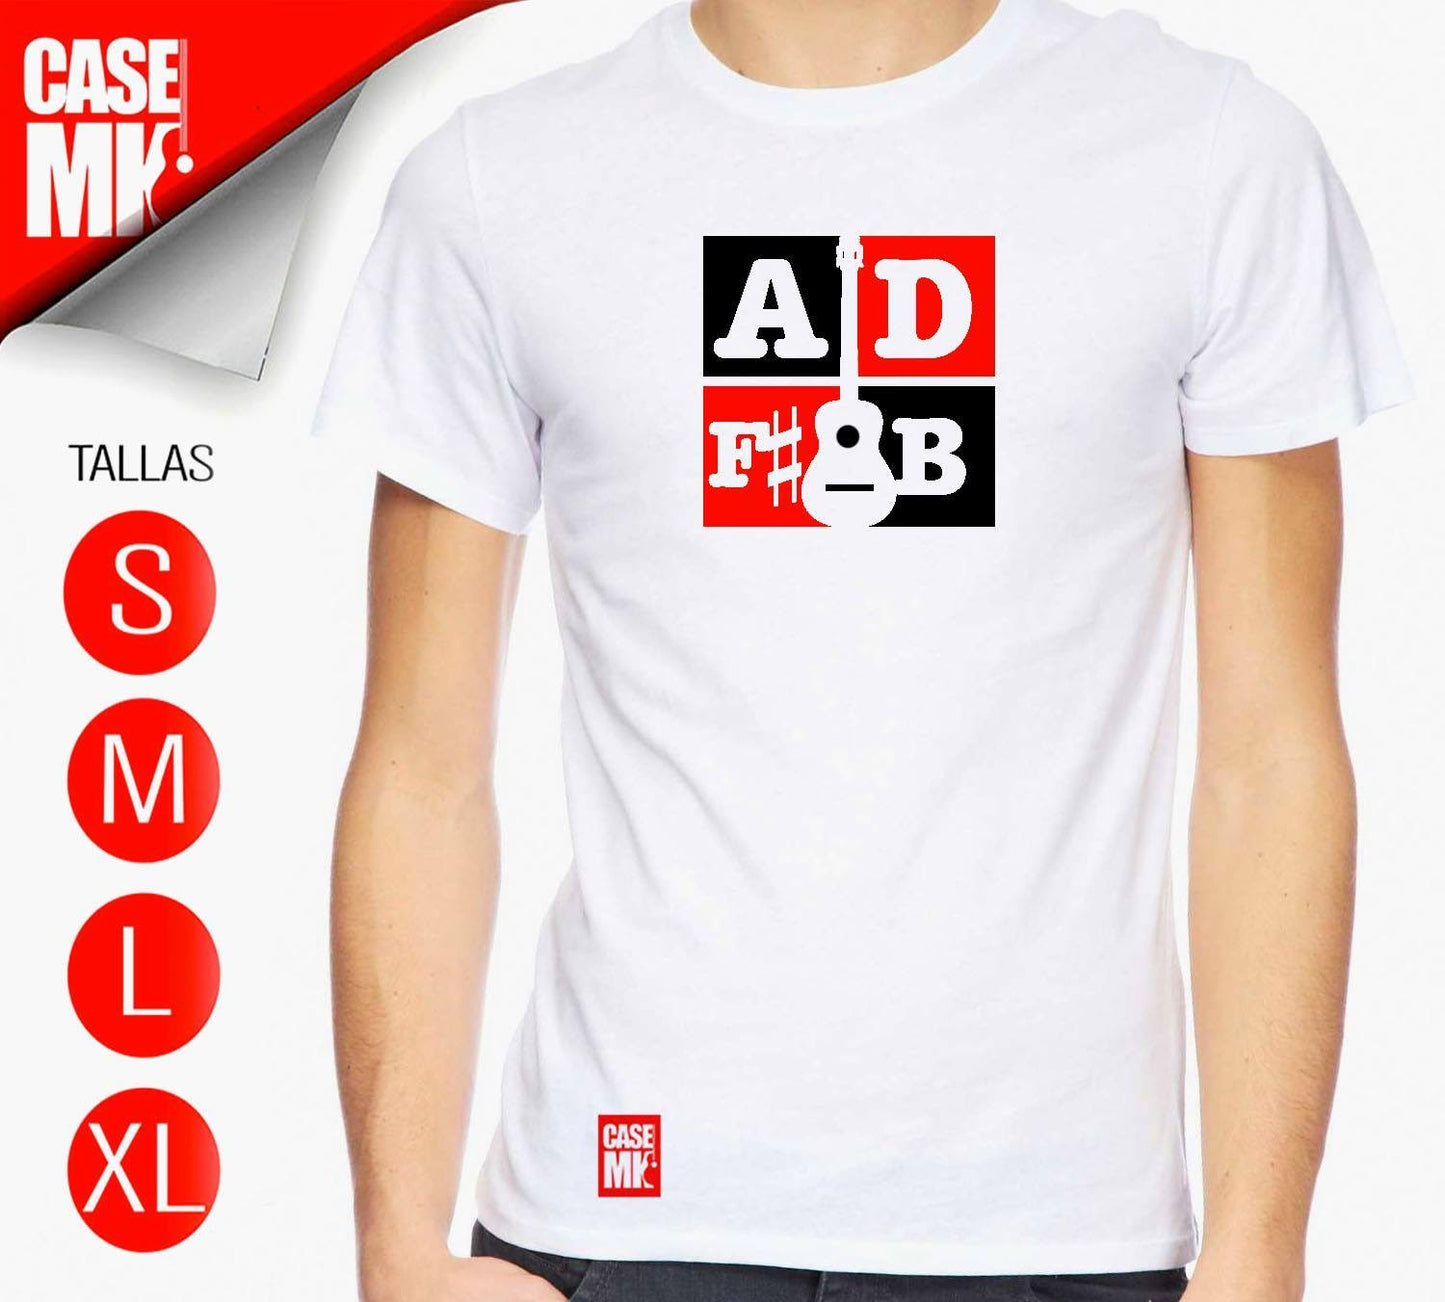 ADF#B T-Shirt - Cuatro Tuning / Franela con afinación A D F# B